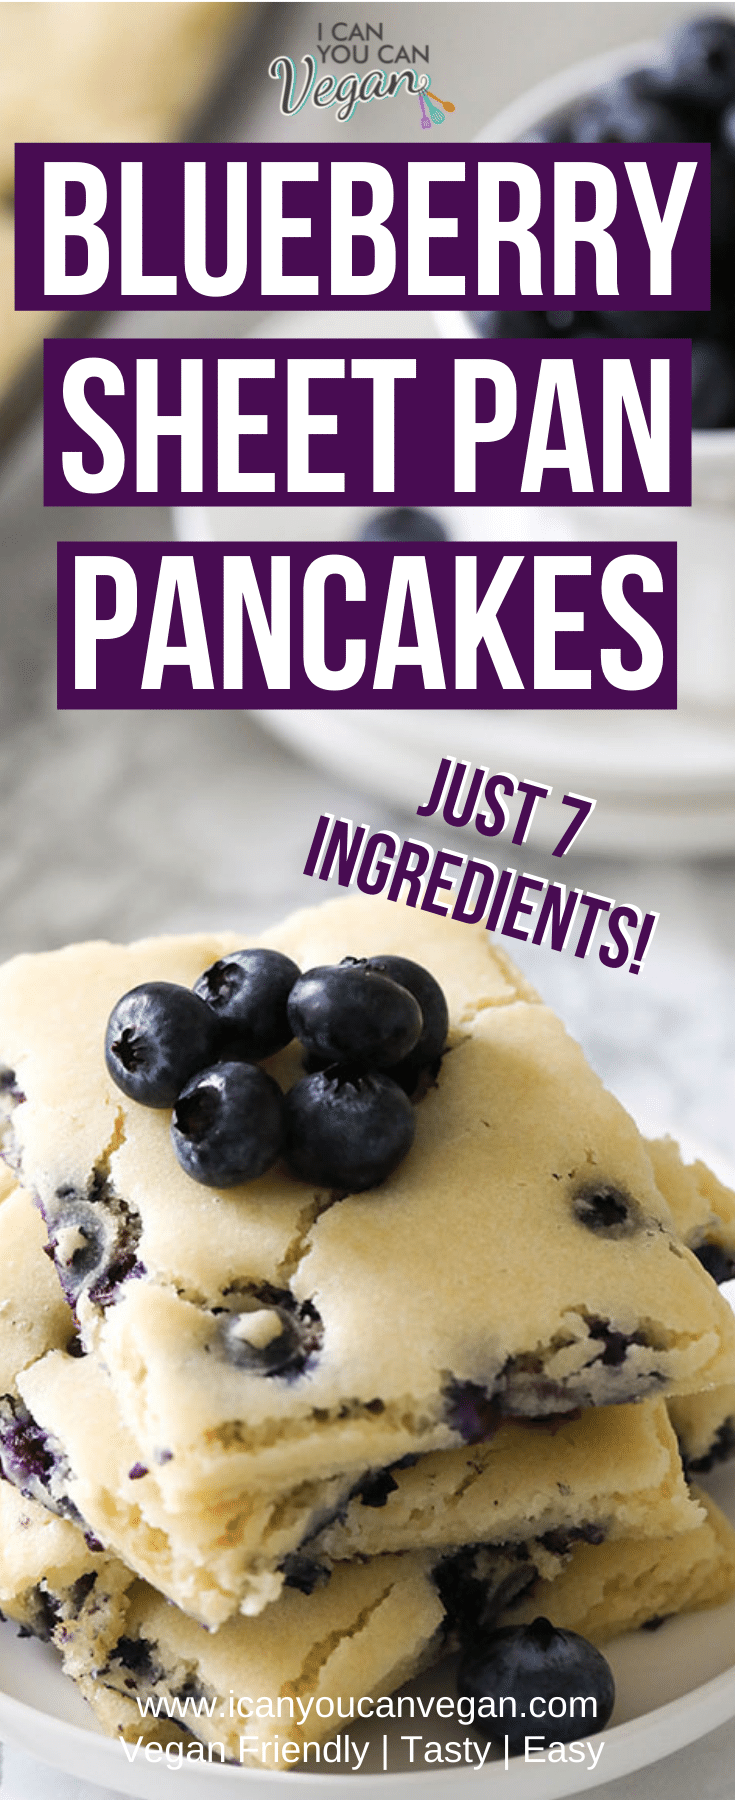 Vegan Blueberry Sheet Pan Pancakes- Pinterest
